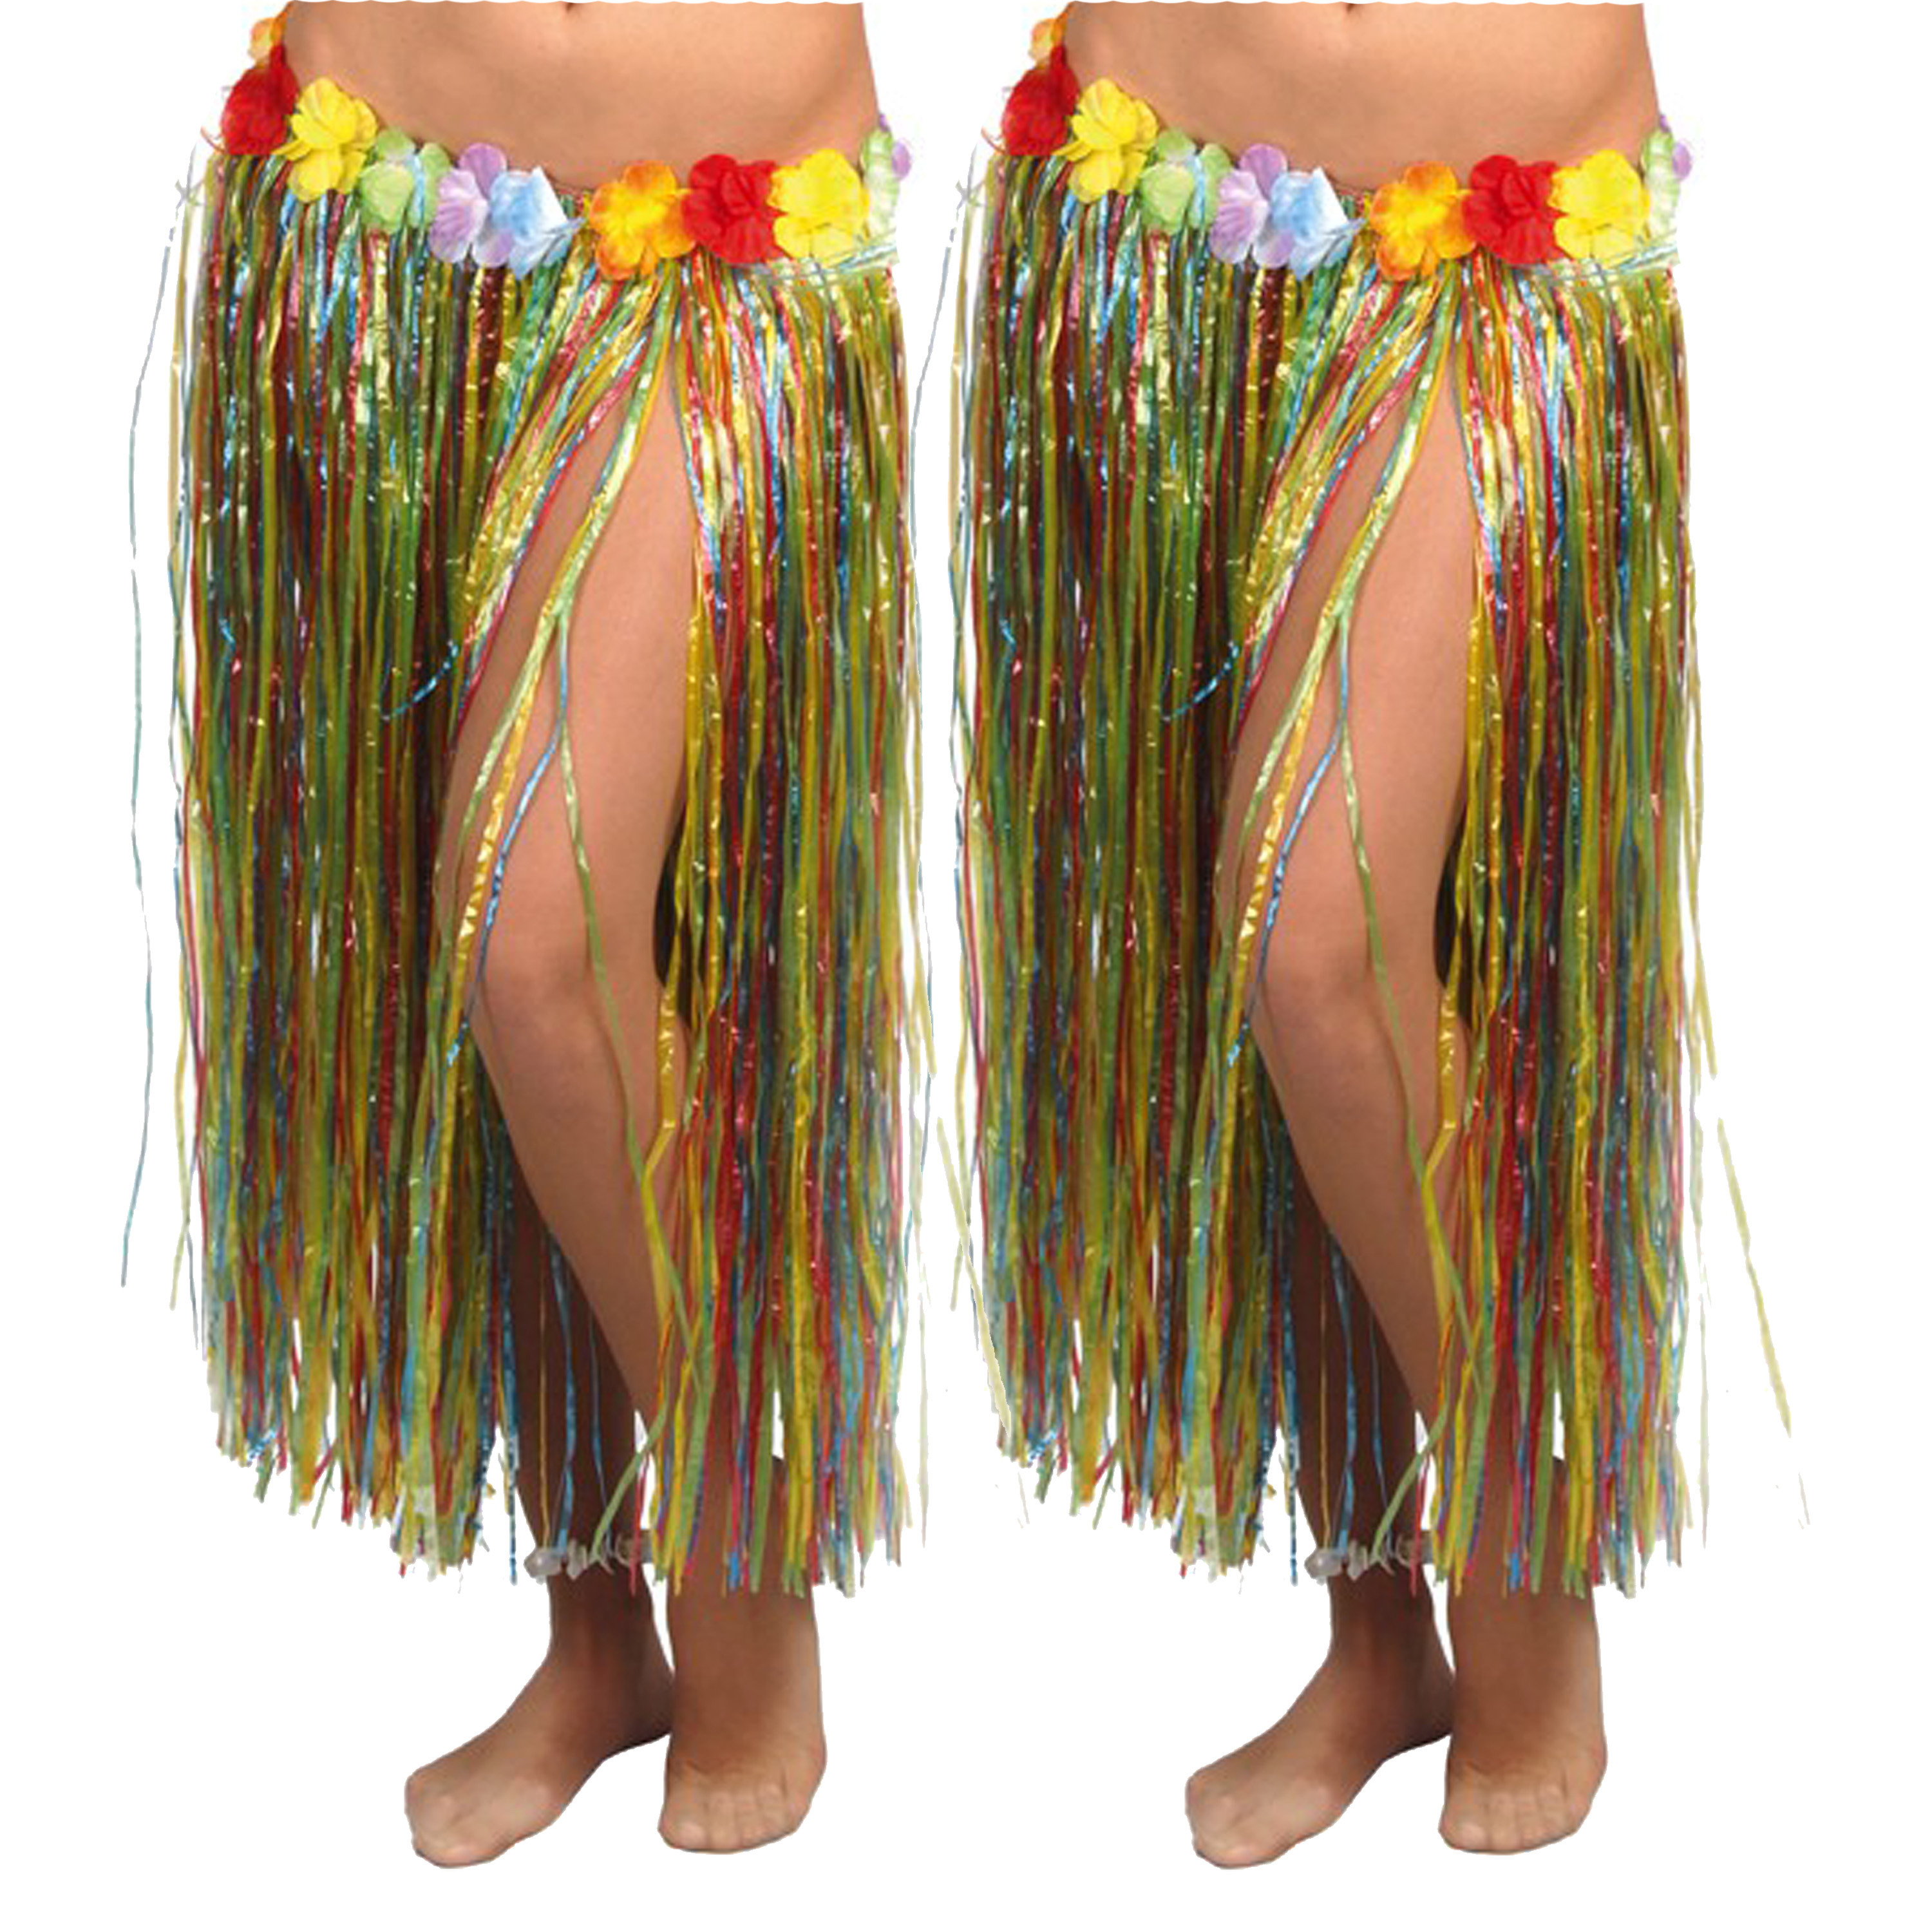 Hawaii verkleed rokje 2x voor volwassenen multicolour 75 cm rieten hoela rokje tropisch